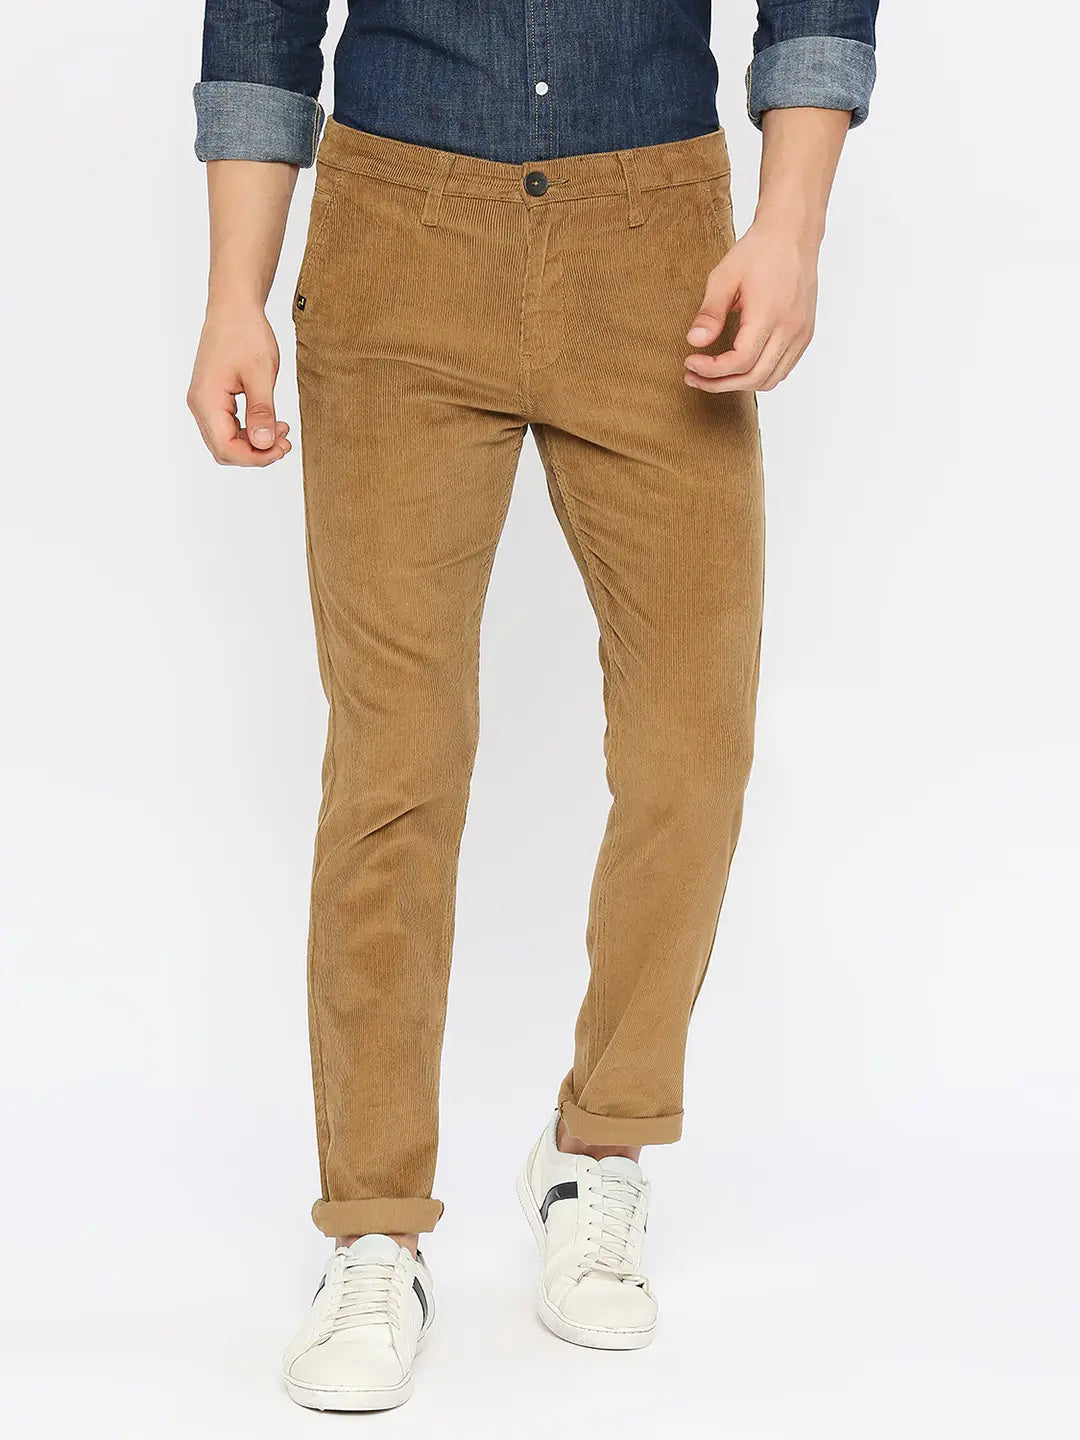 Men's Cotton Trousers